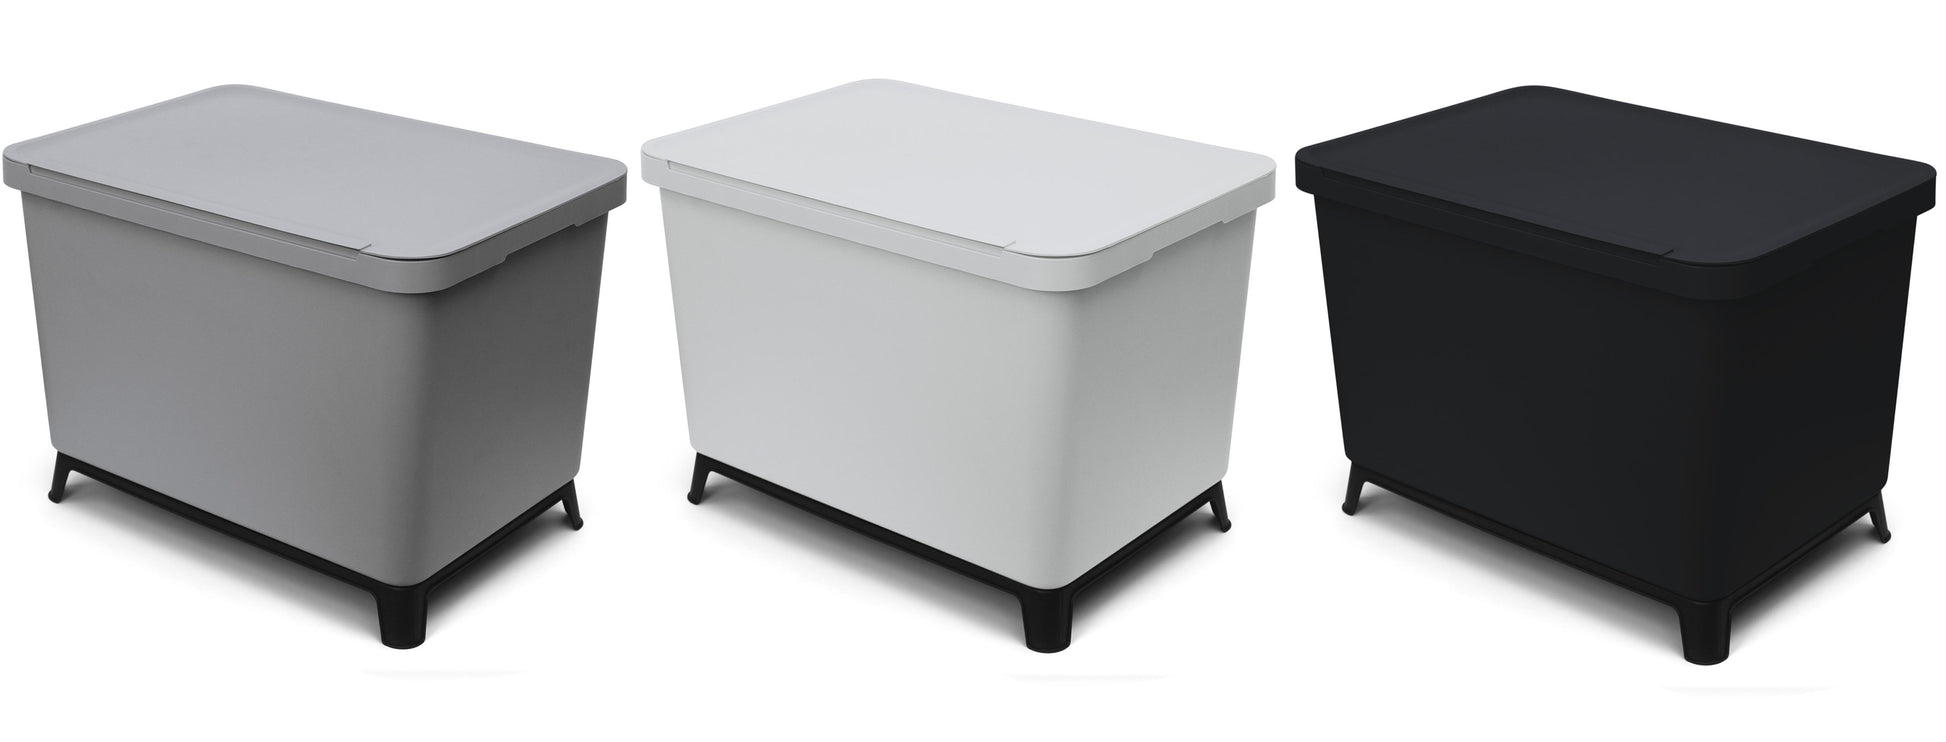 Drei quadratische YourCasa® Mülltrennsysteme in den Farben Grau, Weiß und Schwarz mit geschlossenen Deckeln und schwarzen Beinen für eine effiziente Mülltrennung.